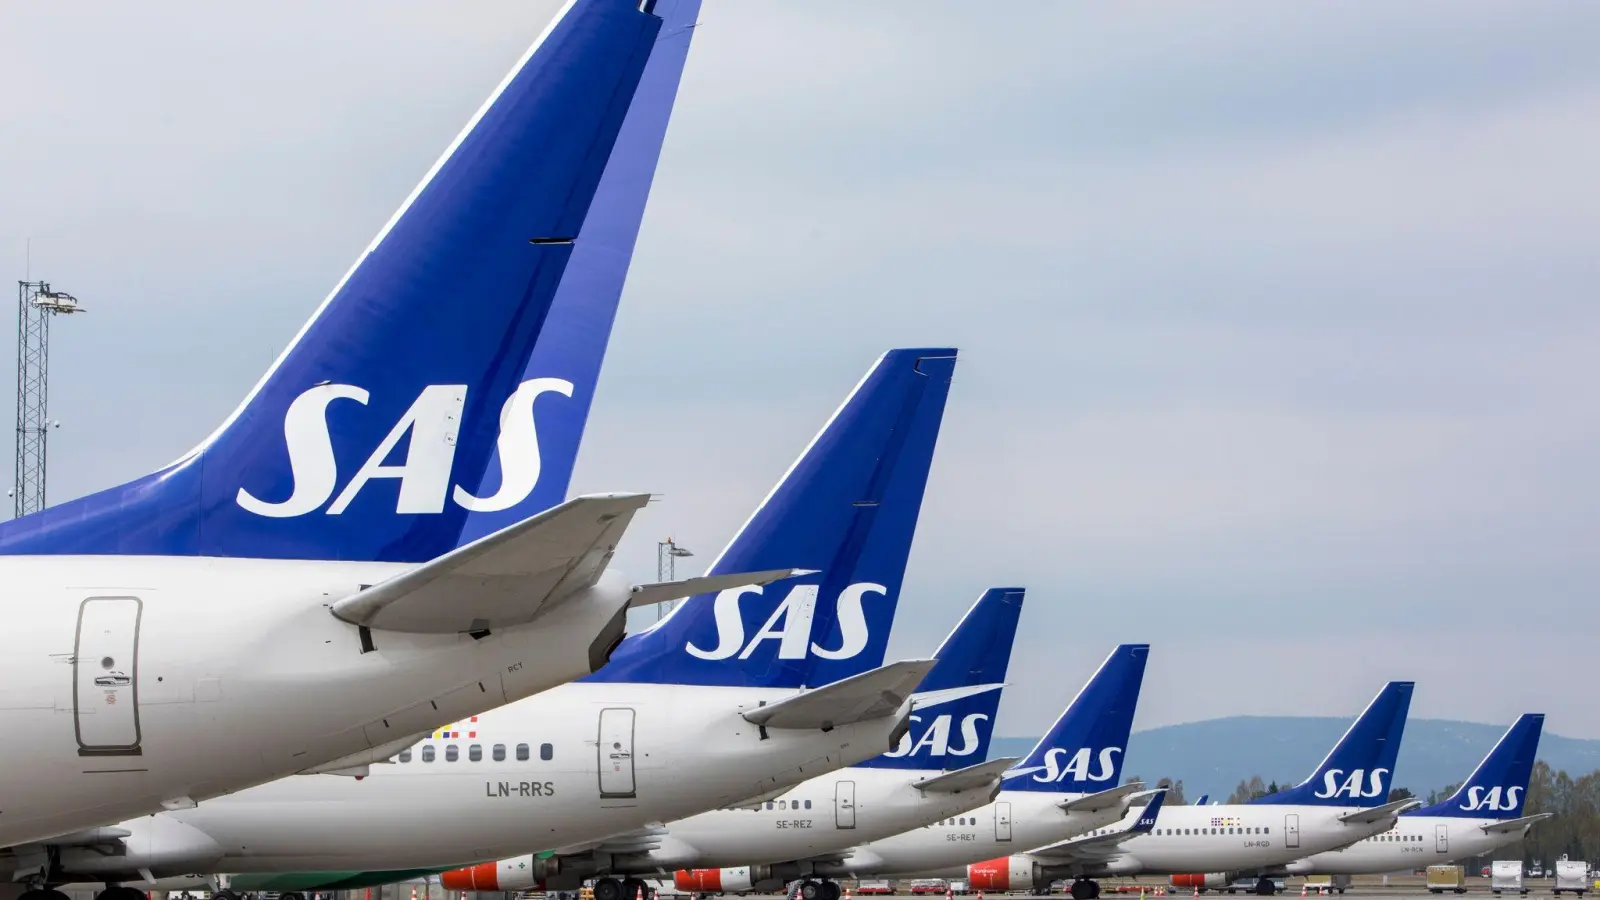 Die Flugzeuge der skandinavischen Fluggesellschaft SAS können wieder abheben. (Foto: Ole Berg-Rusten/NTB Scanpix/dpa)